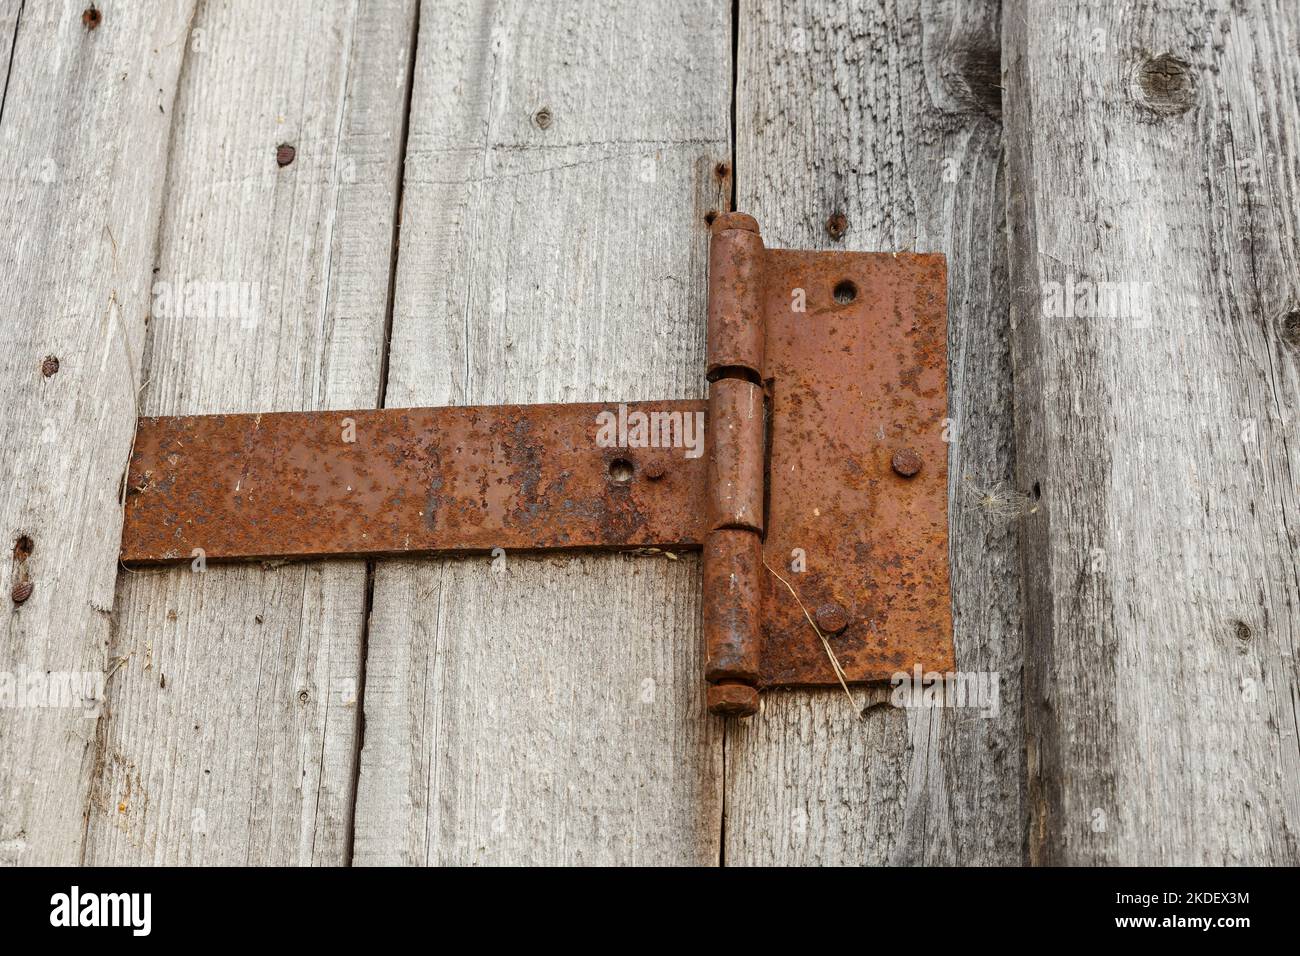 rusty metal door hinge. Door hinge on a wooden wall. Stock Photo